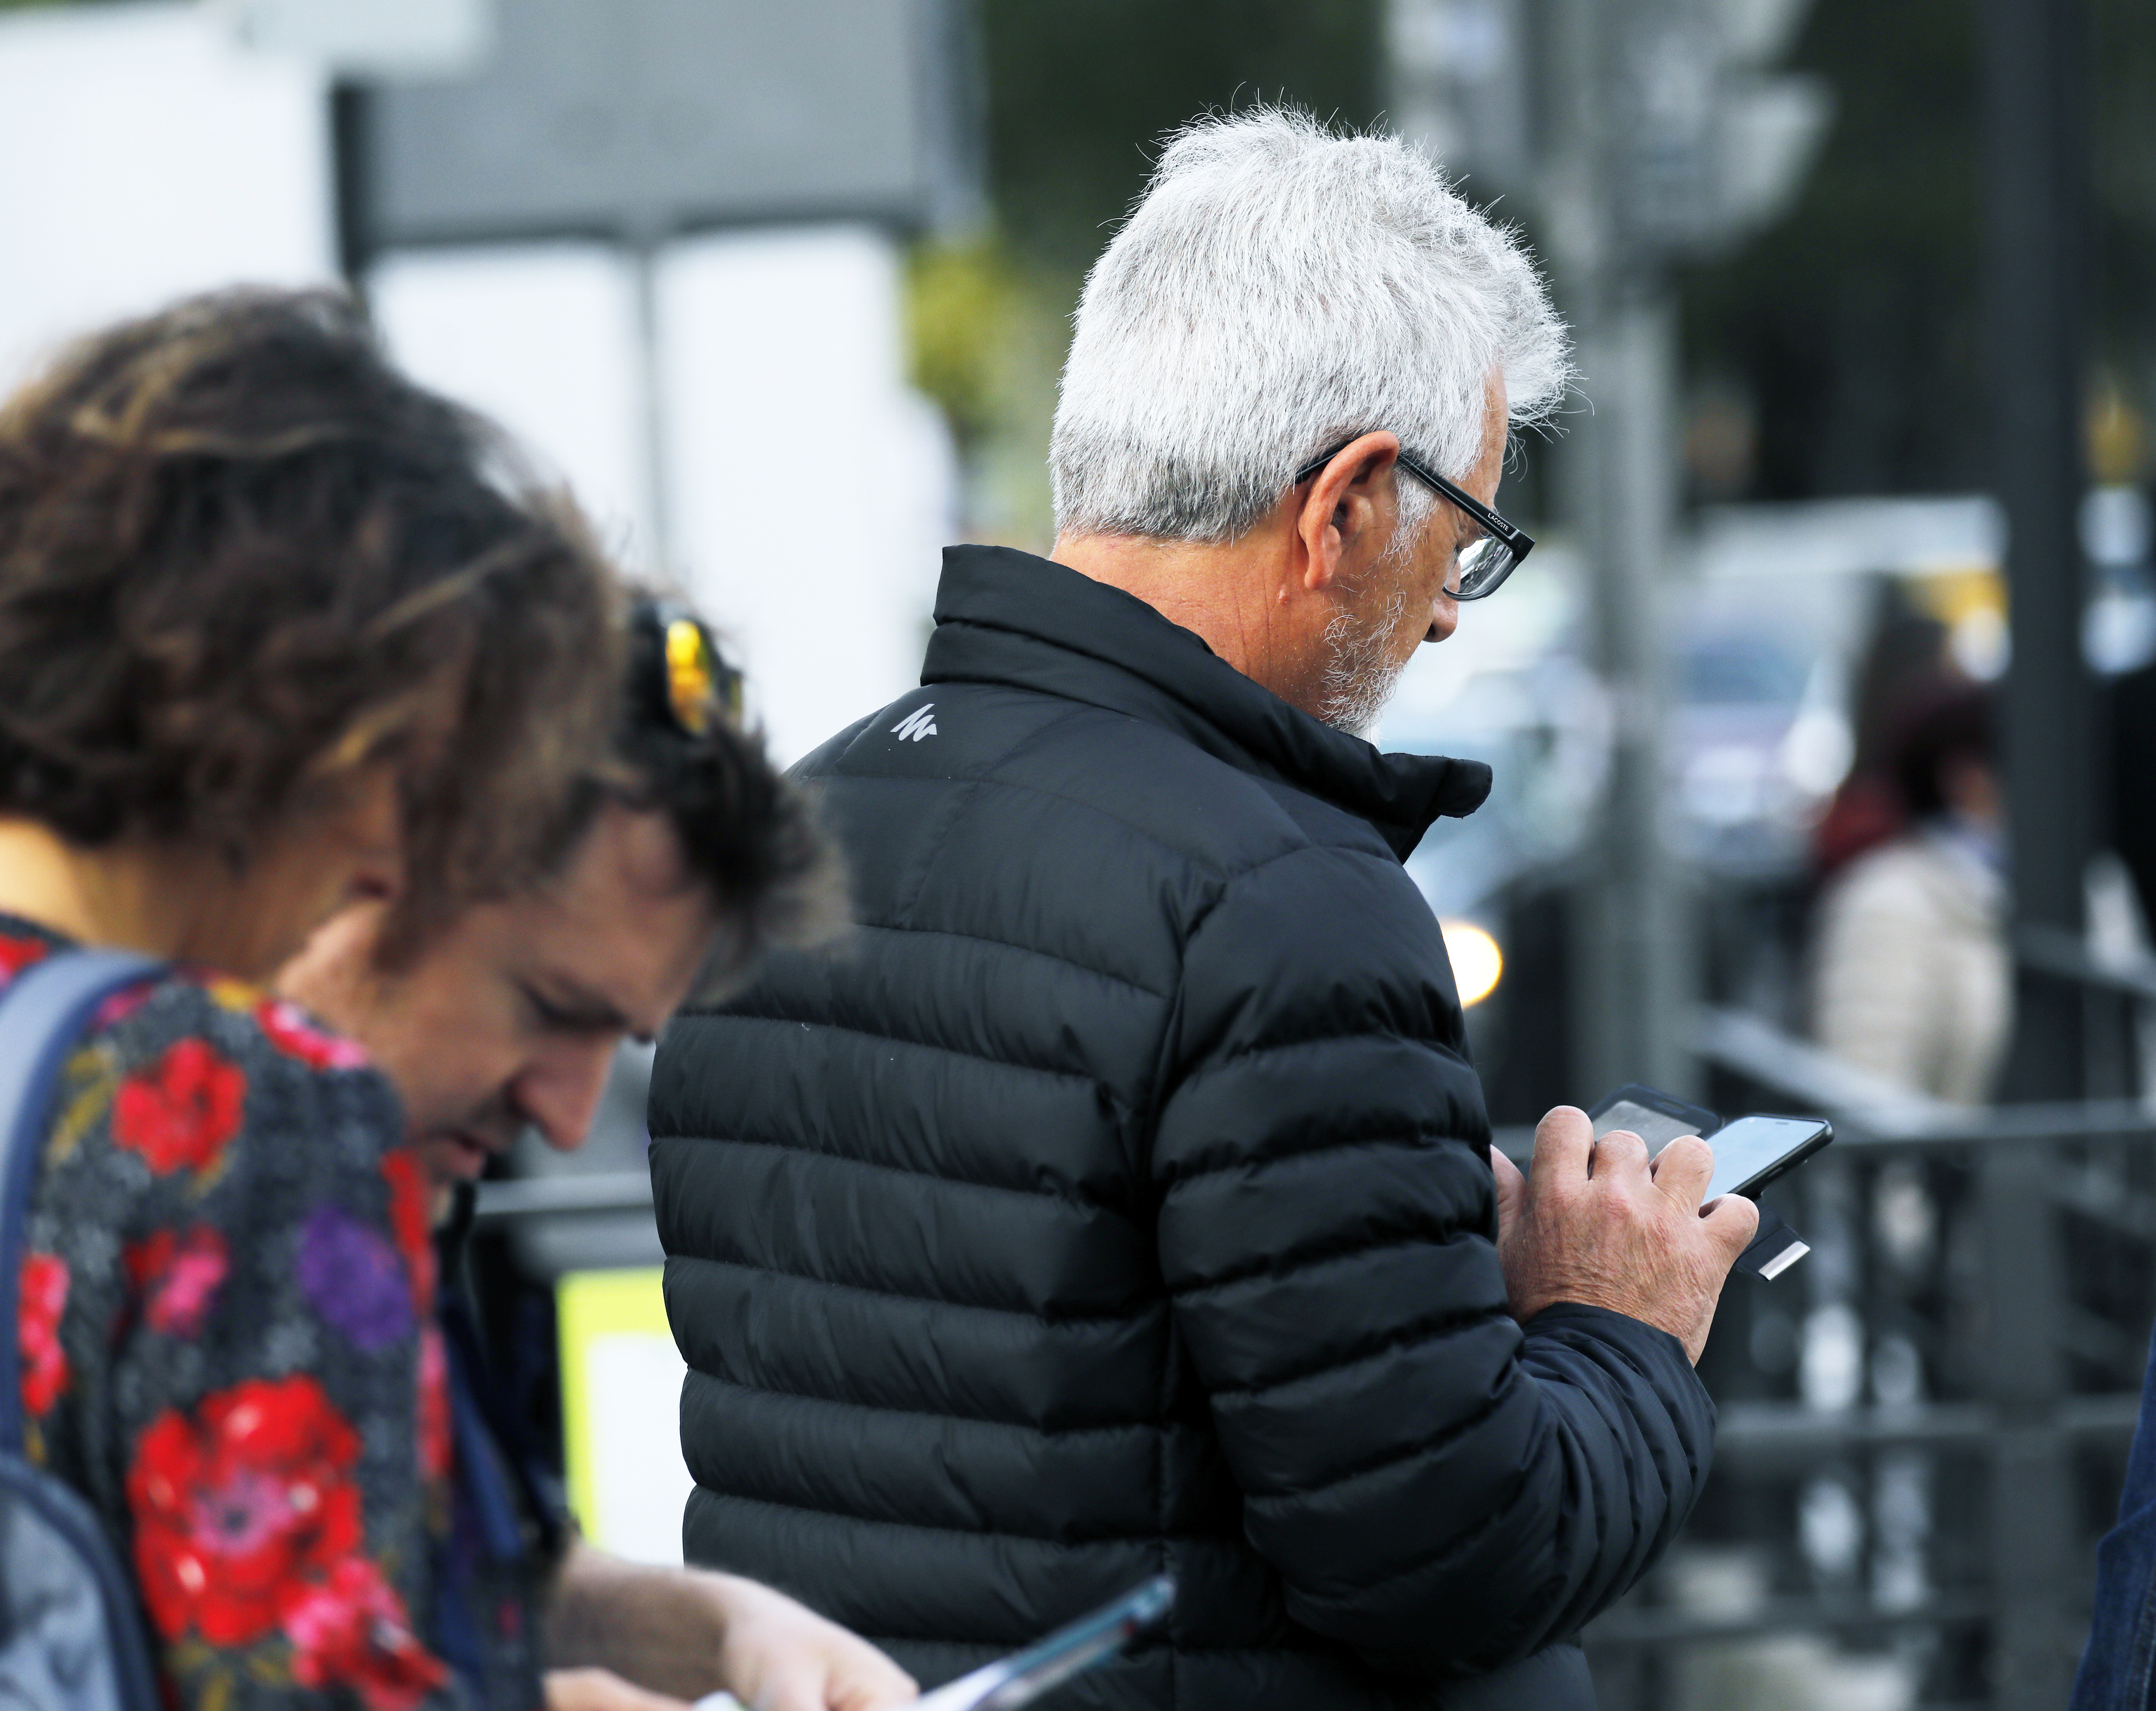 rid. Gente utilizando telefonos moviles. en la calle Gran Via de Madrid.